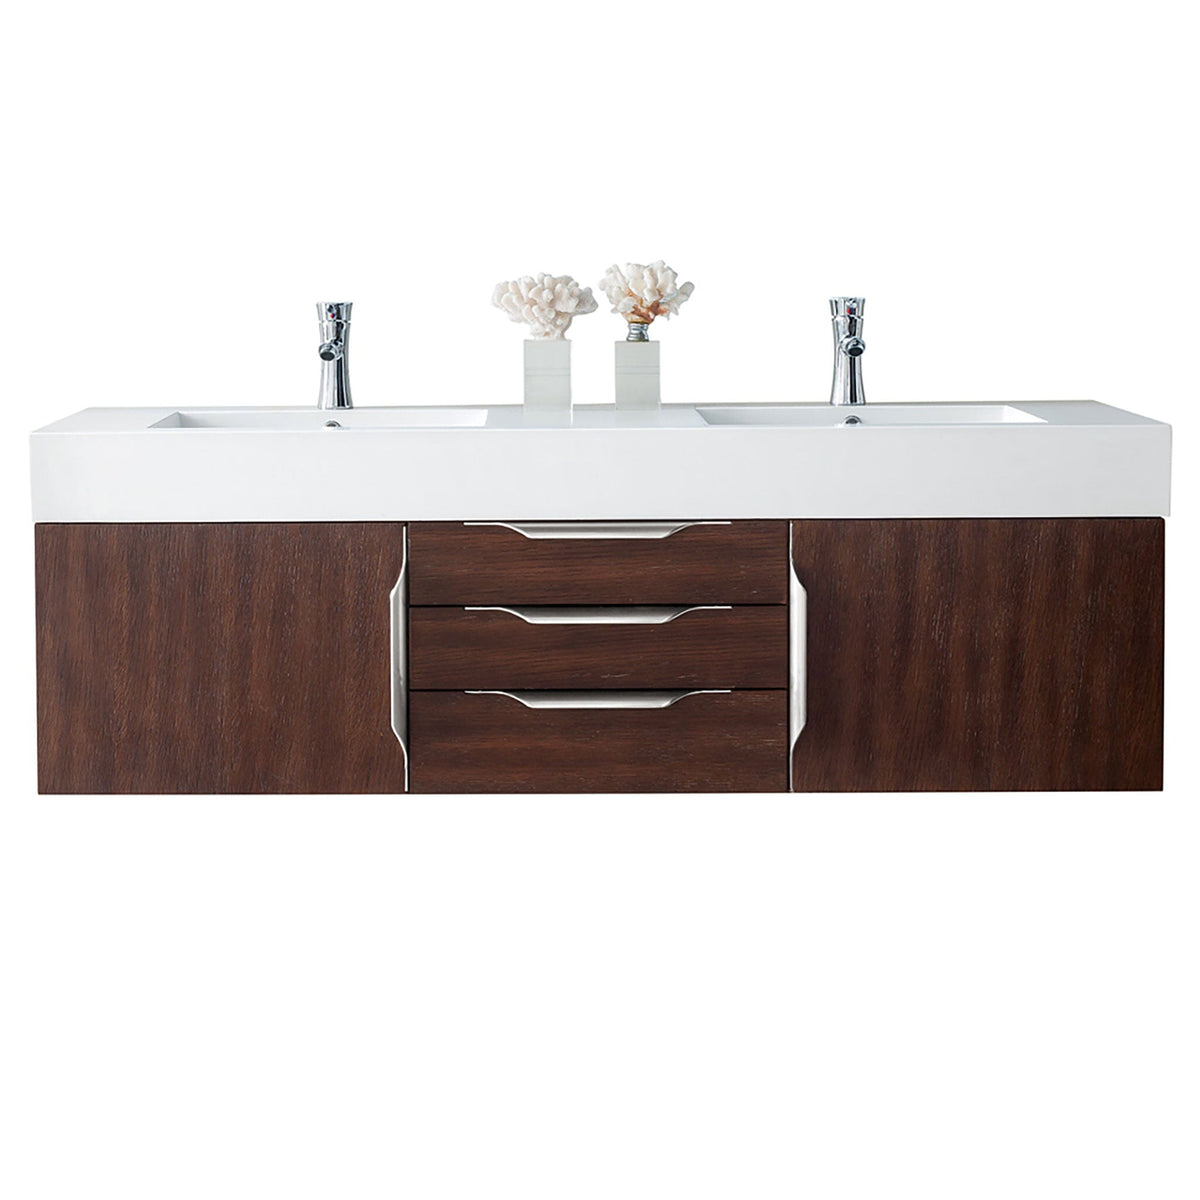 59" Mercer Island Double Bathroom Vanity, Coffee Oak